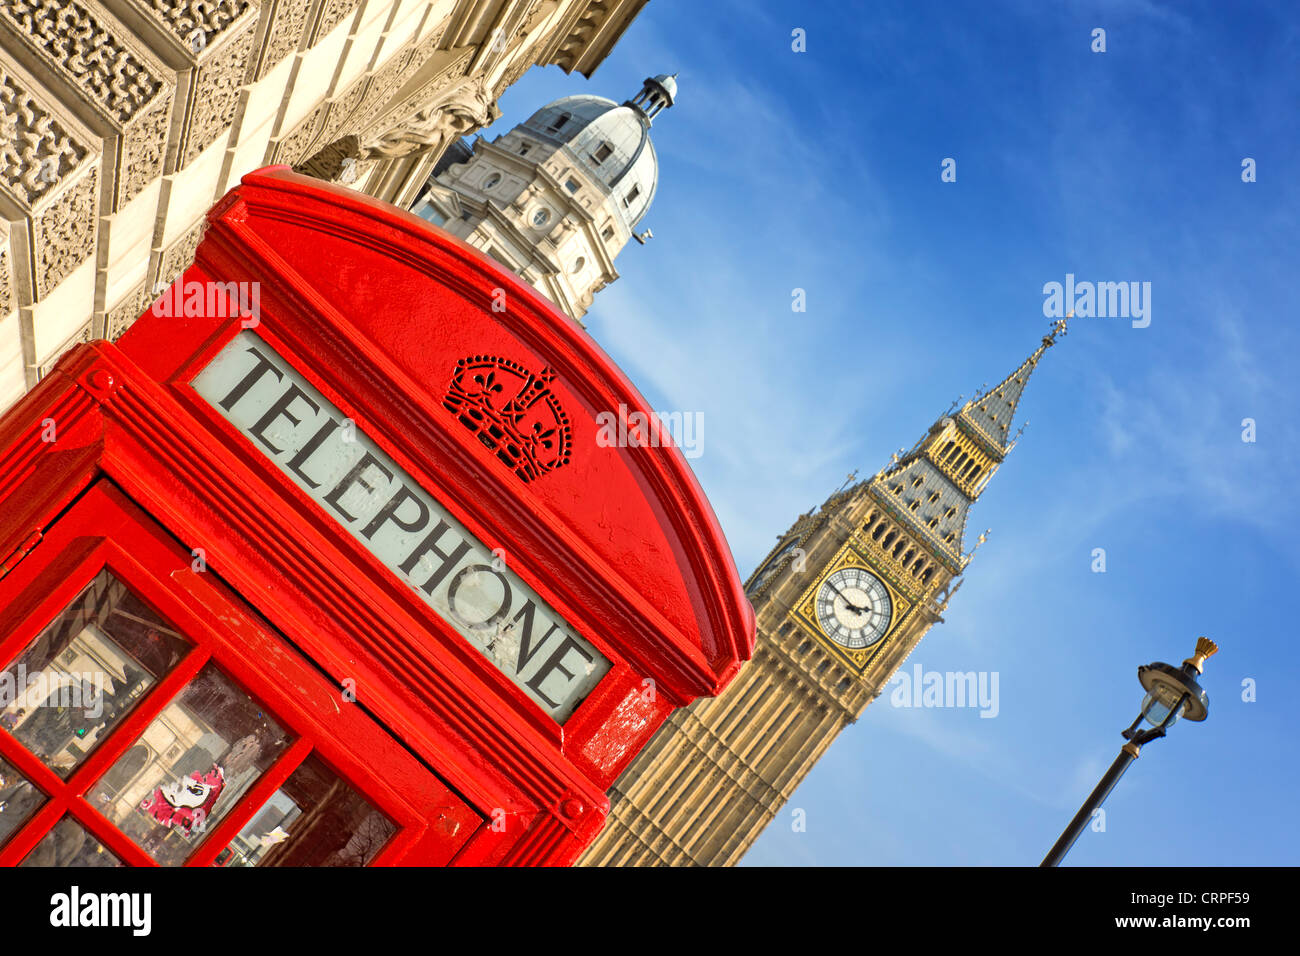 Eine rote Telefonzelle und der Uhrturm Big Ben am Palace of Westminster genannt. Stockfoto